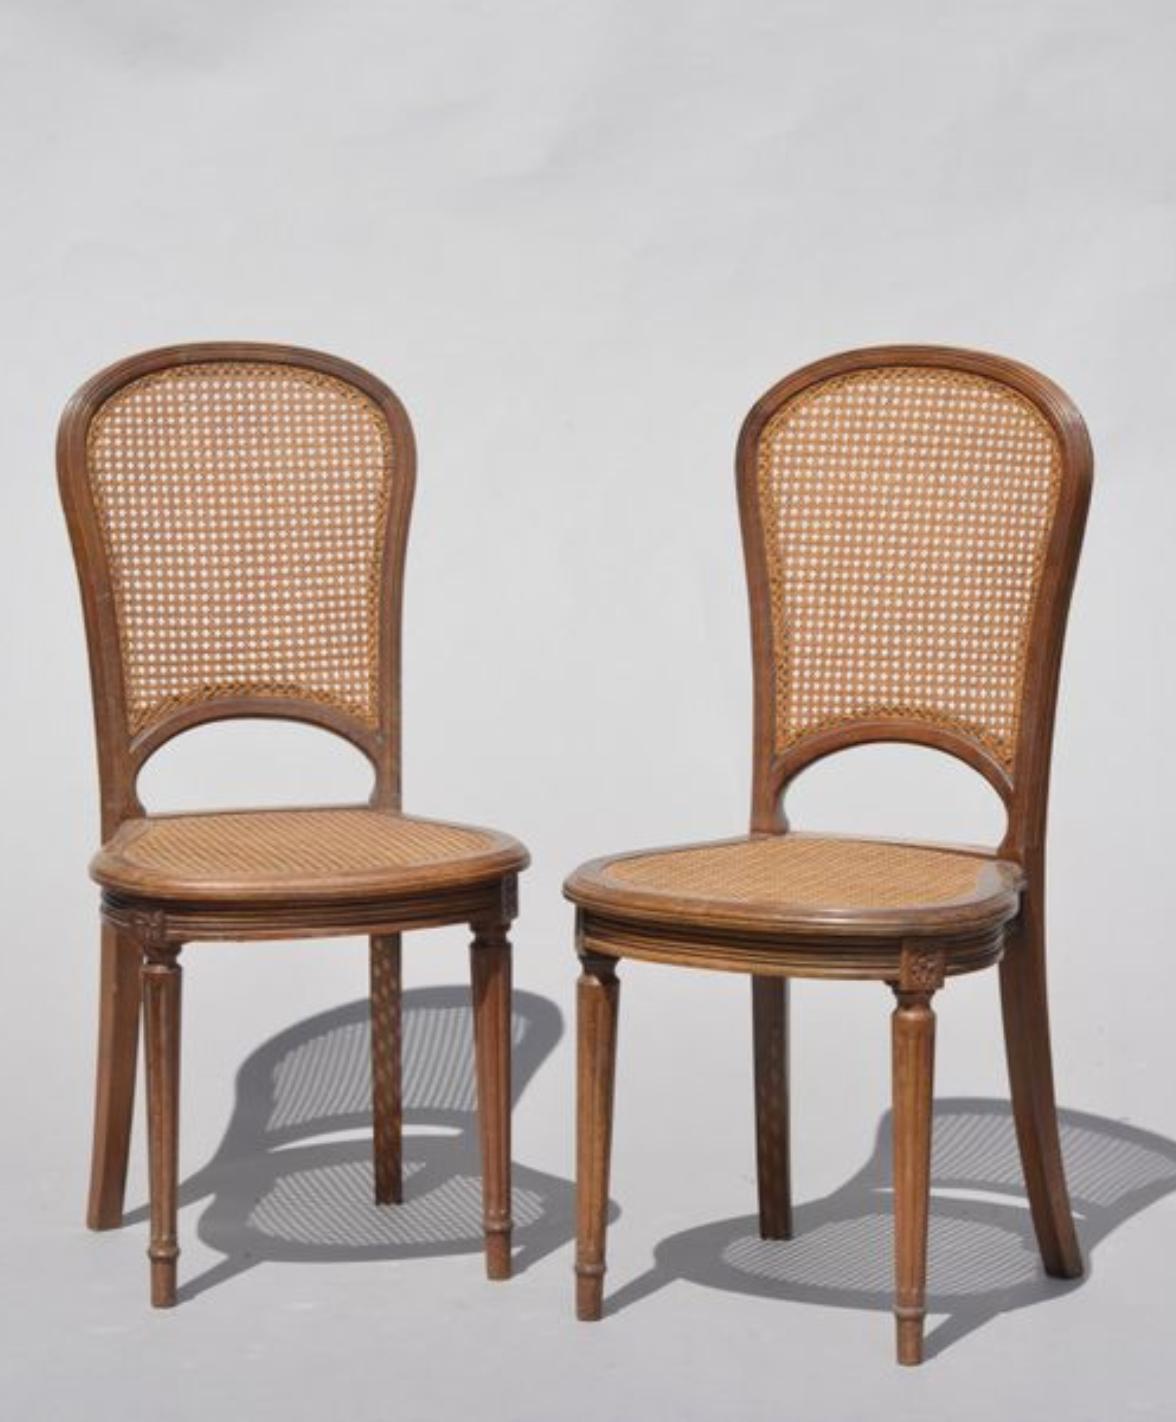 Paar zierliche französische ovale Beistellstühle im Louis XVI-Stil aus Nussbaum mit unterschiedlichen Vorderbeinen mit Kanneluren. Handgeschnitzter Rahmen, Rückenlehnen und Sitze mit Rohrgeflecht,
um 1890.